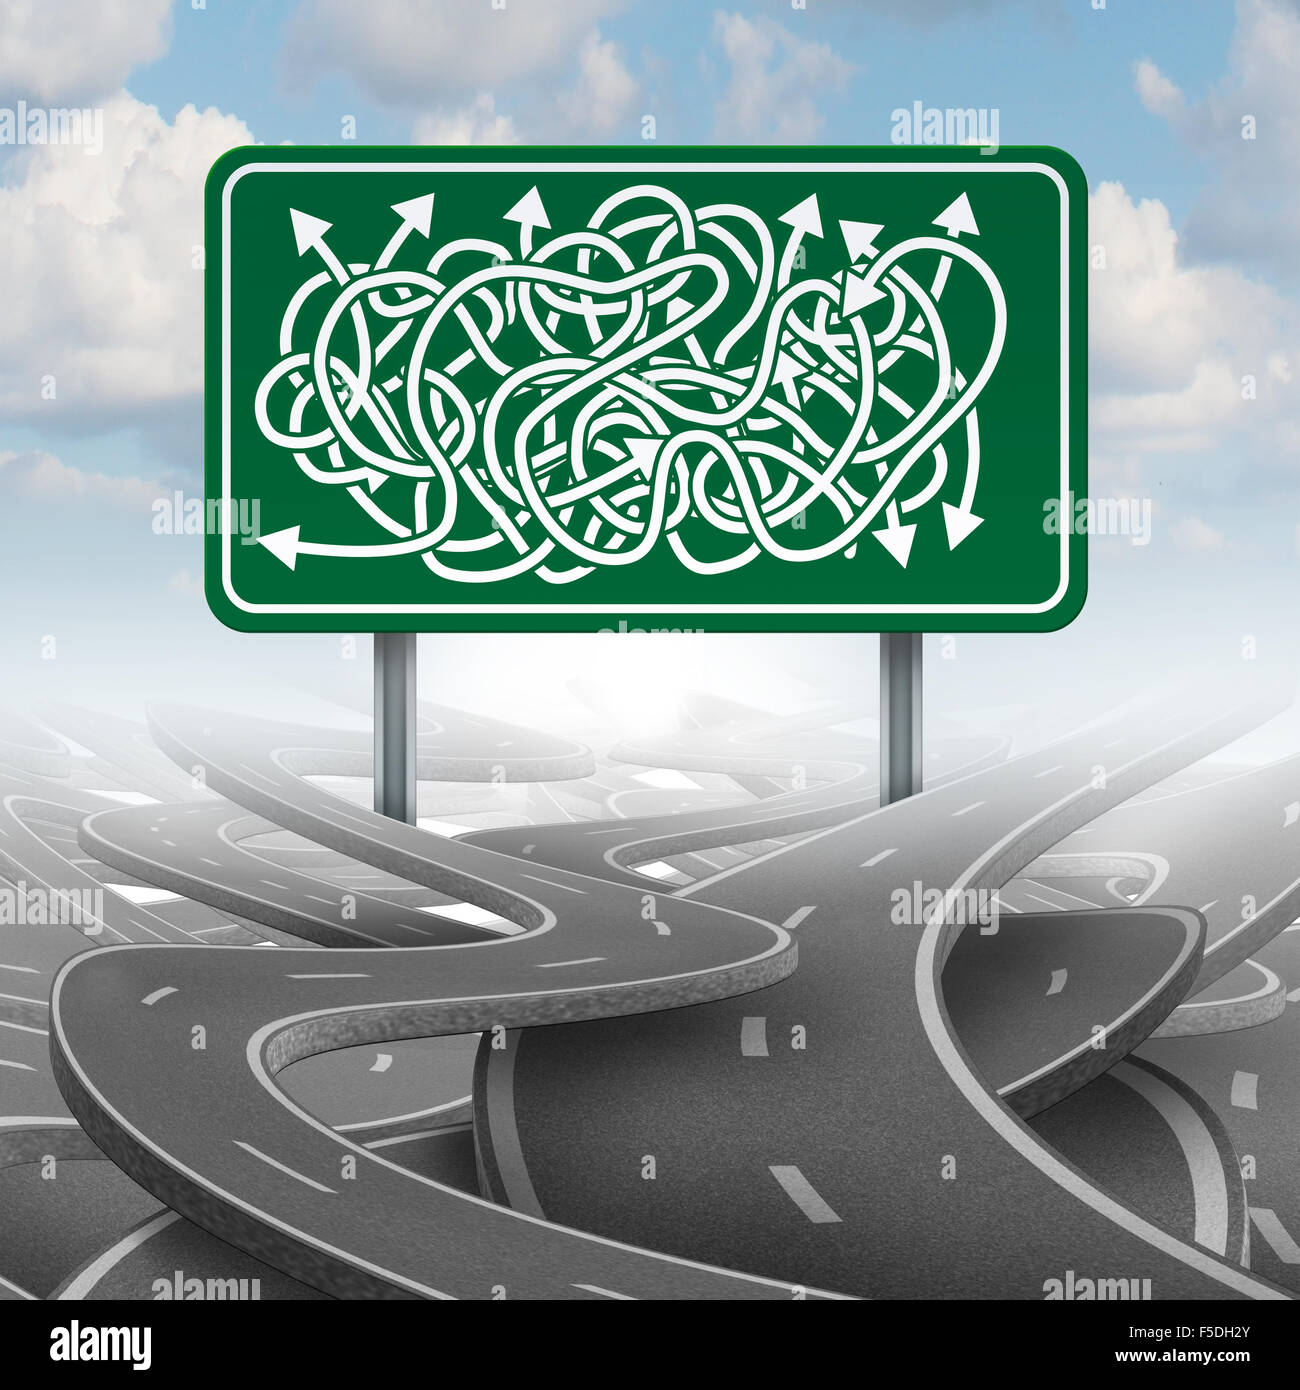 Unternehmen verwirrt Wahl Konzept und Bürokratie-Symbol als eine Gruppe von Straßen mit einem grünen Autobahn-Schild mit gemischten Richtungspfeile verheddert. Stockfoto